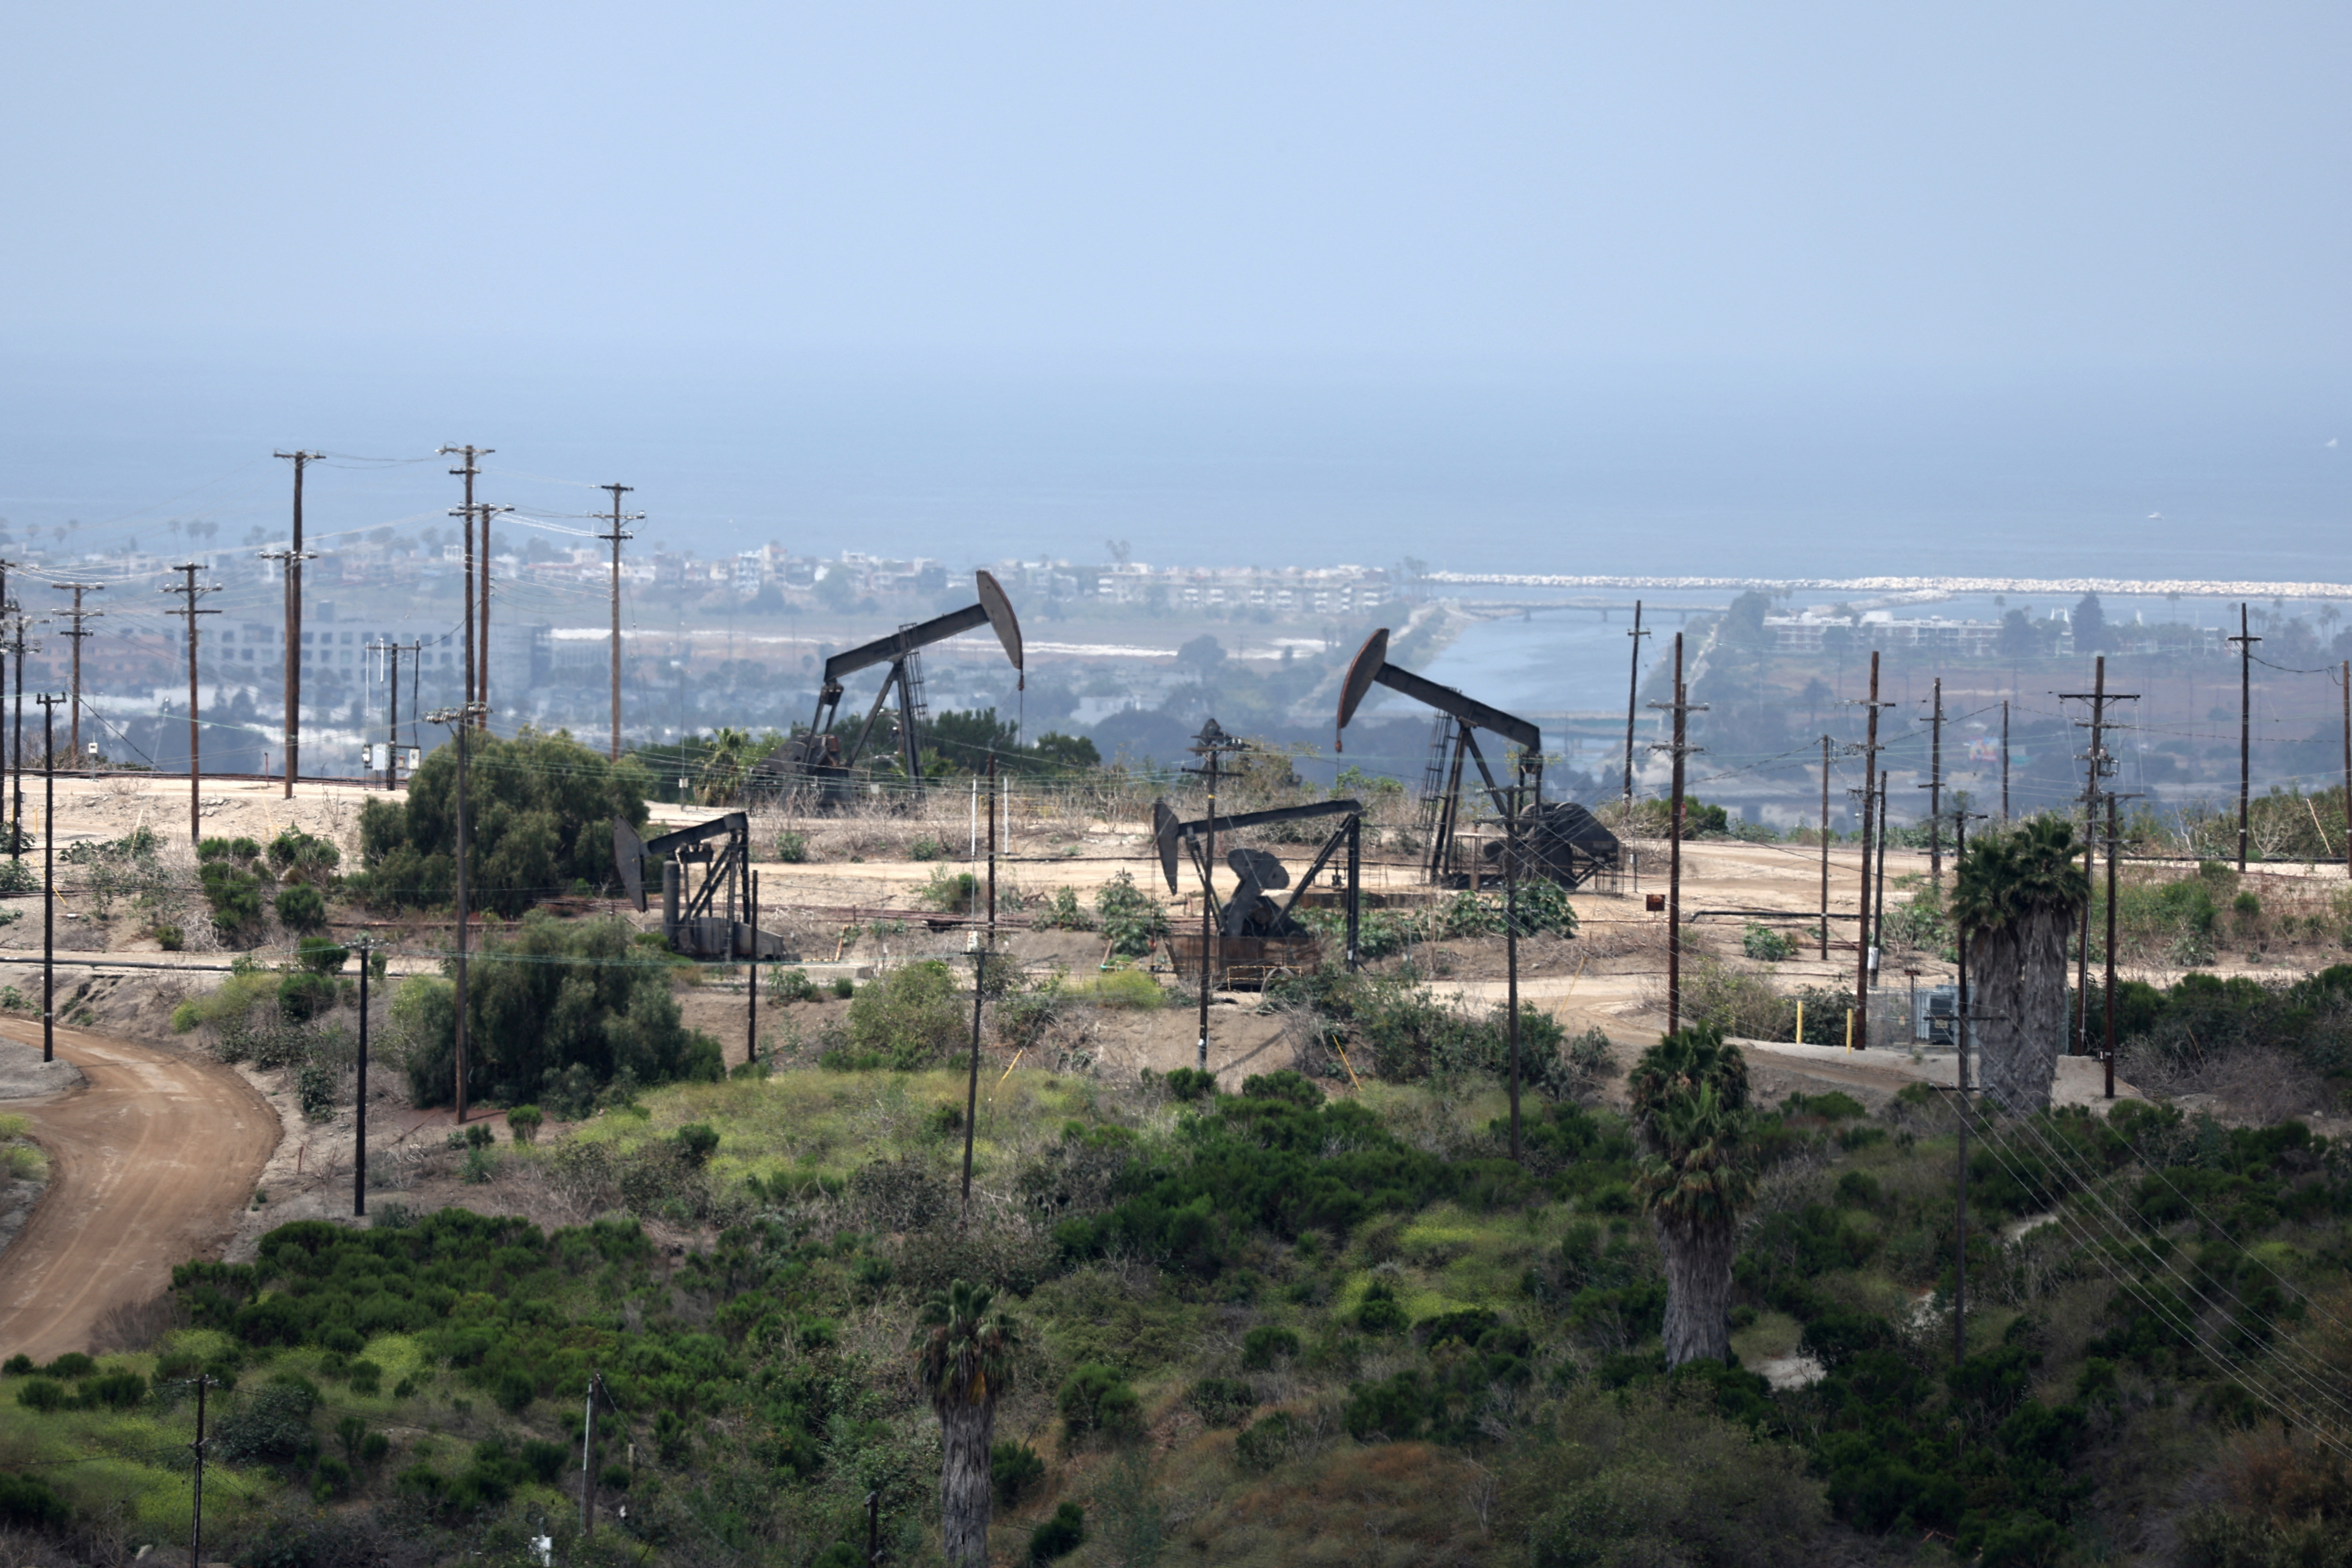 Pump jacks operate in an oil field in Los Angeles